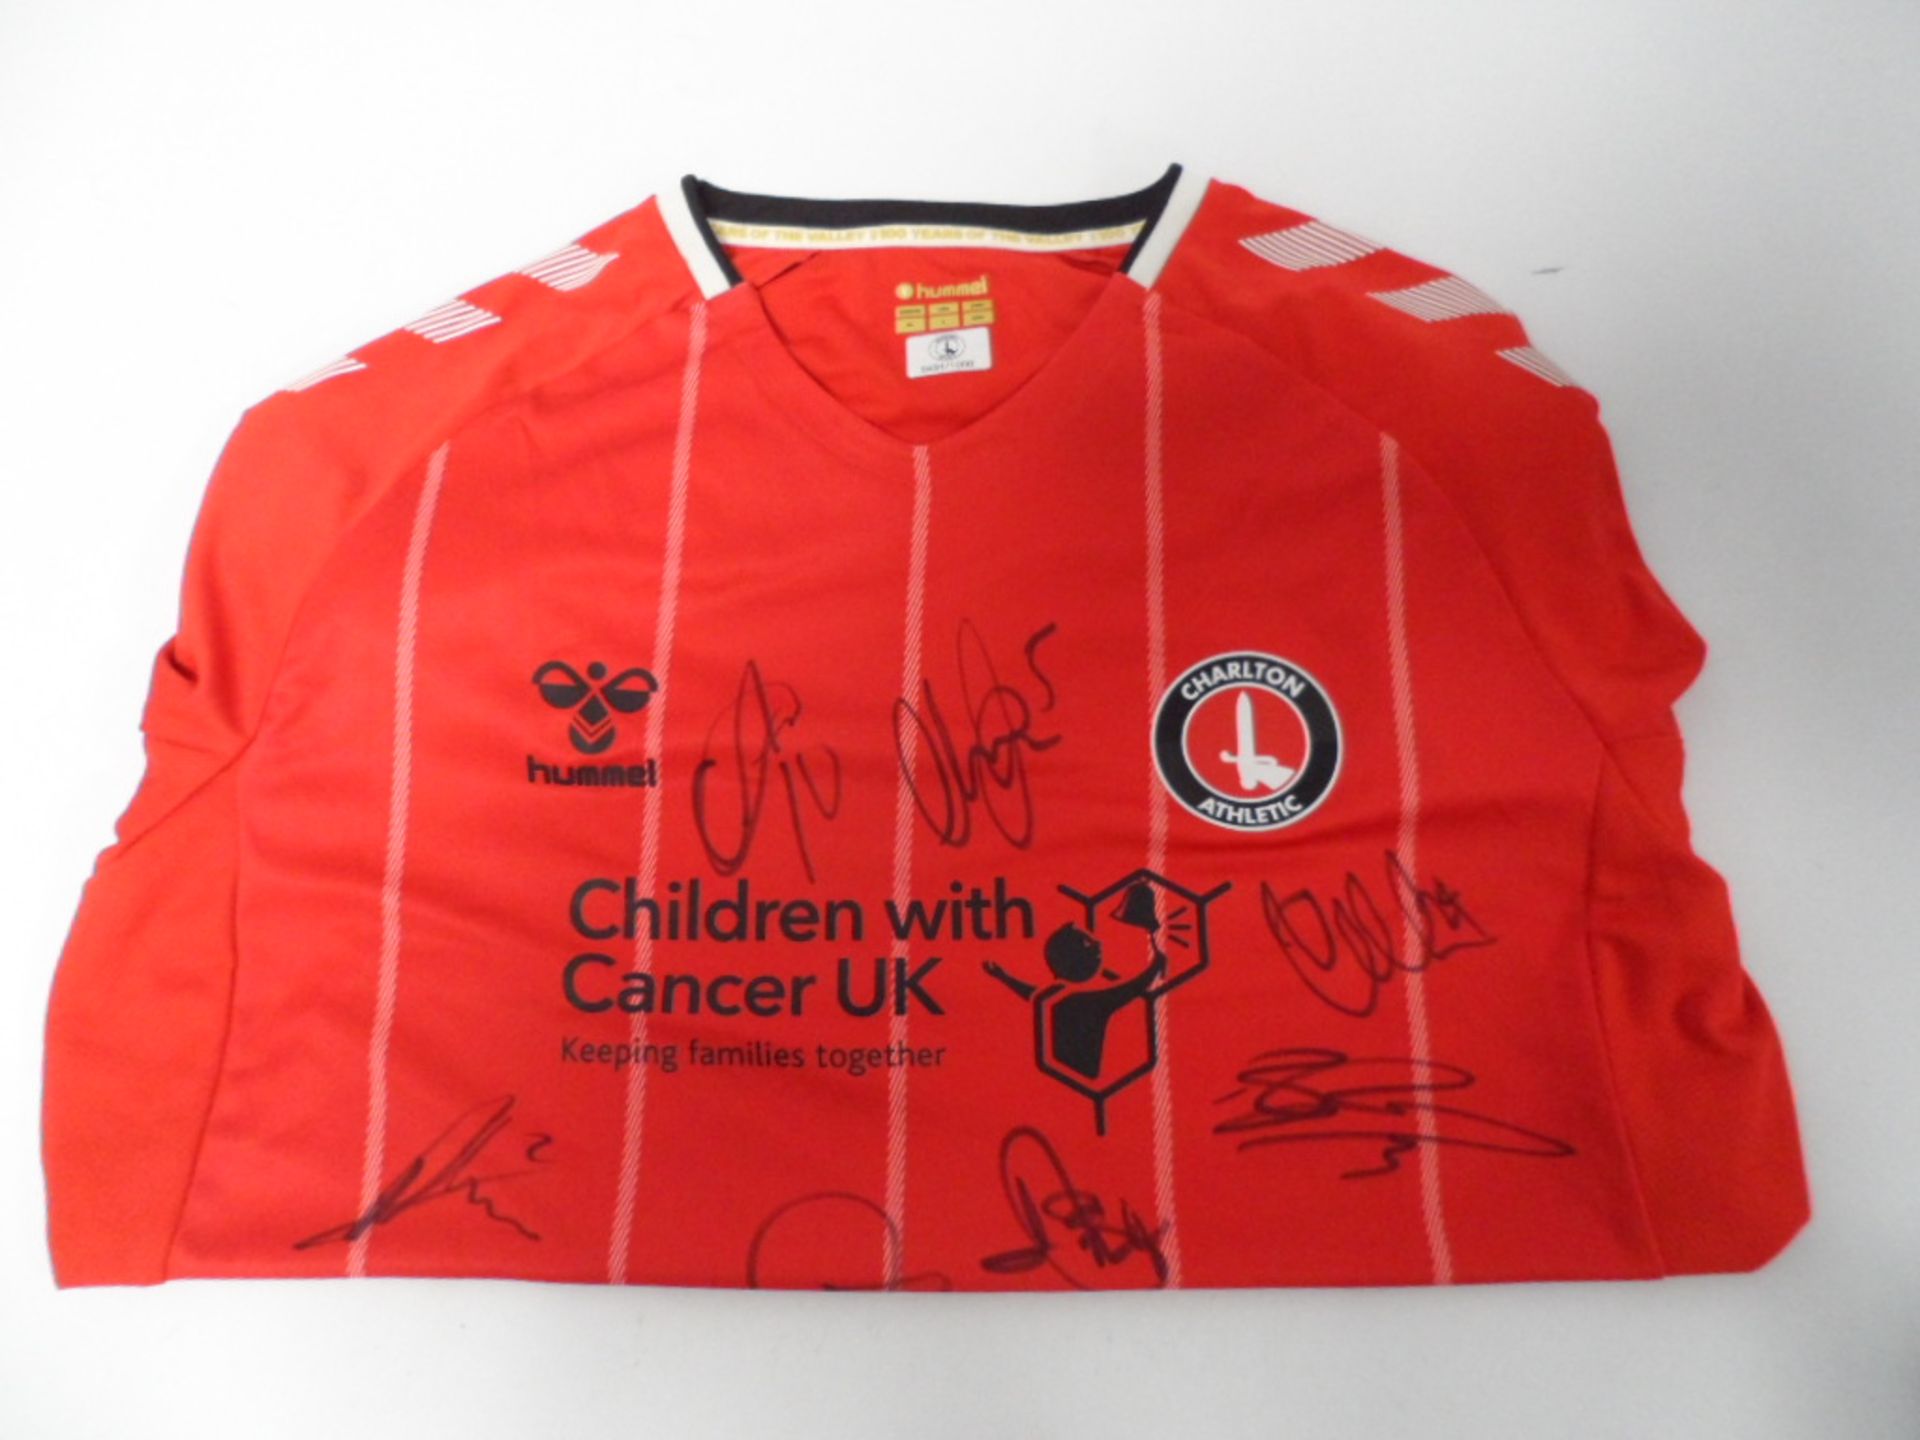 Charlton athletic Hummel 19/20 season shirt bearing signatures (unverified)